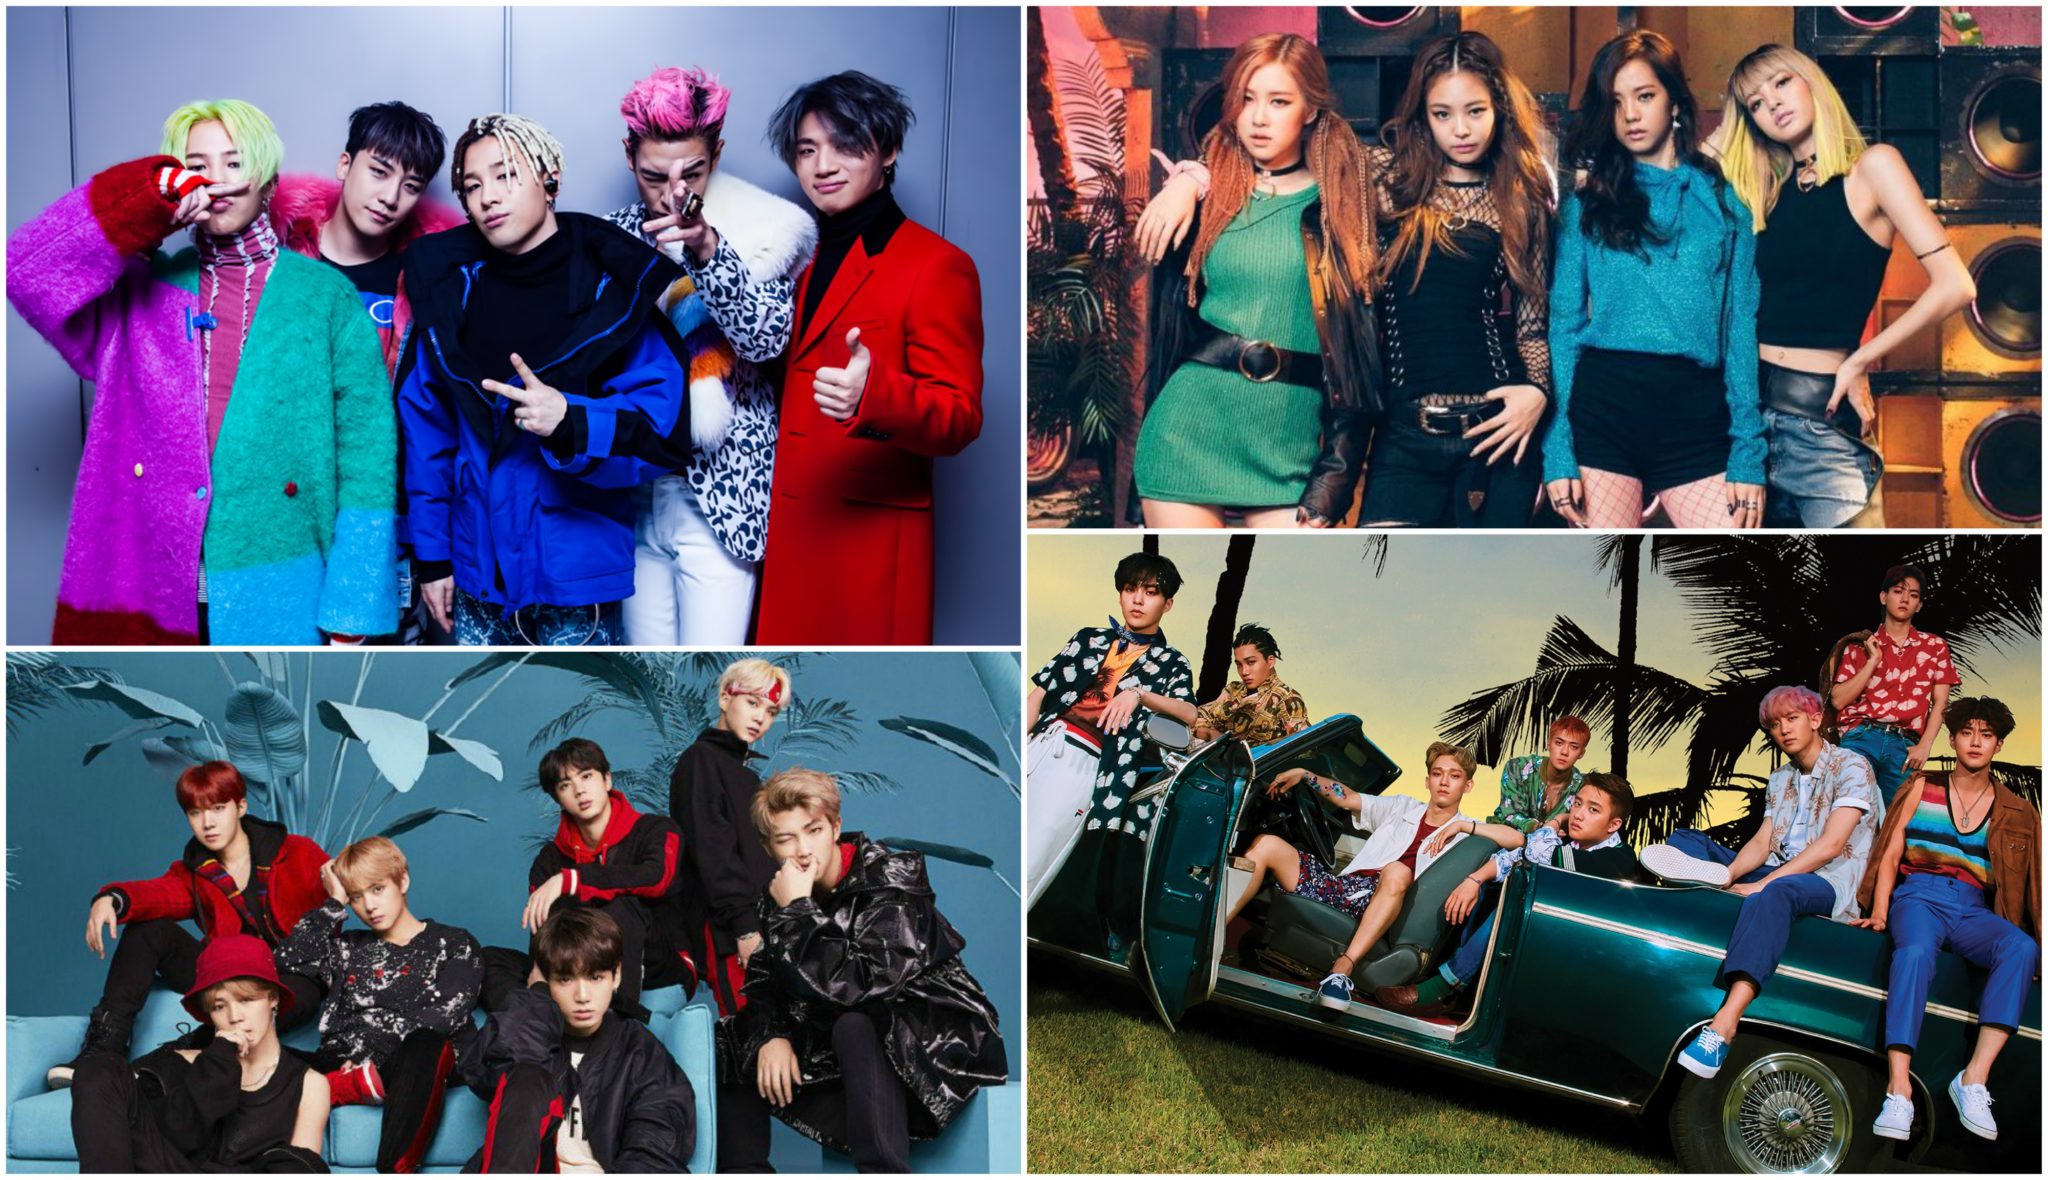 К-pop: почему корейская поп-музыка покоряет западный мир